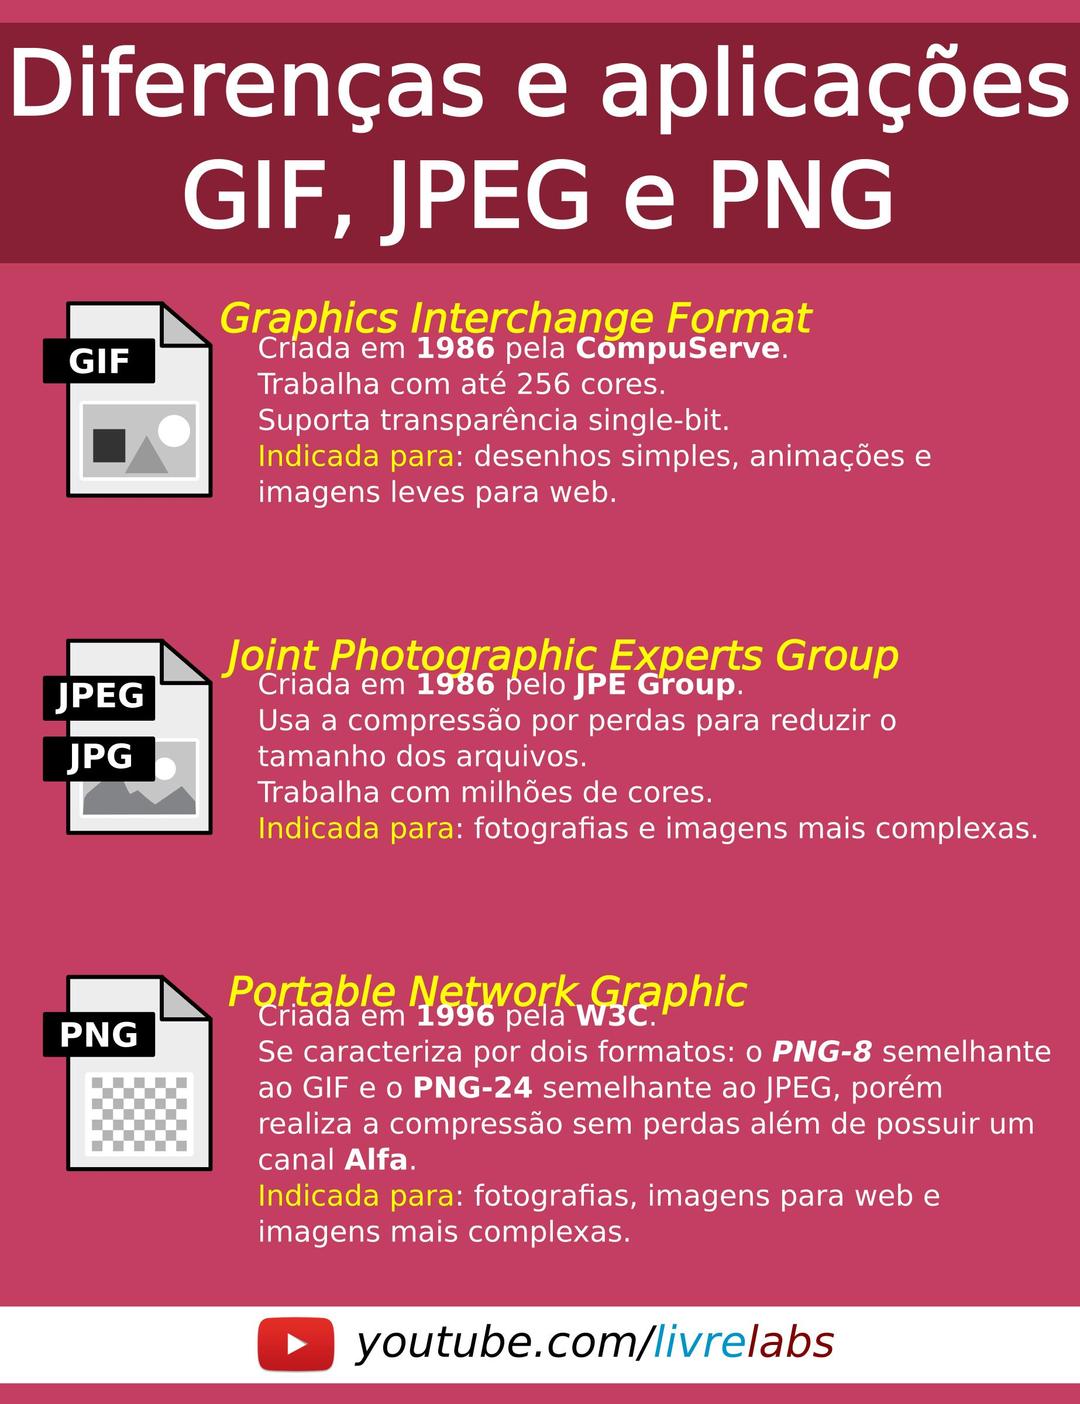 Card de informaçoes sobre os formatos de imagens png transparent